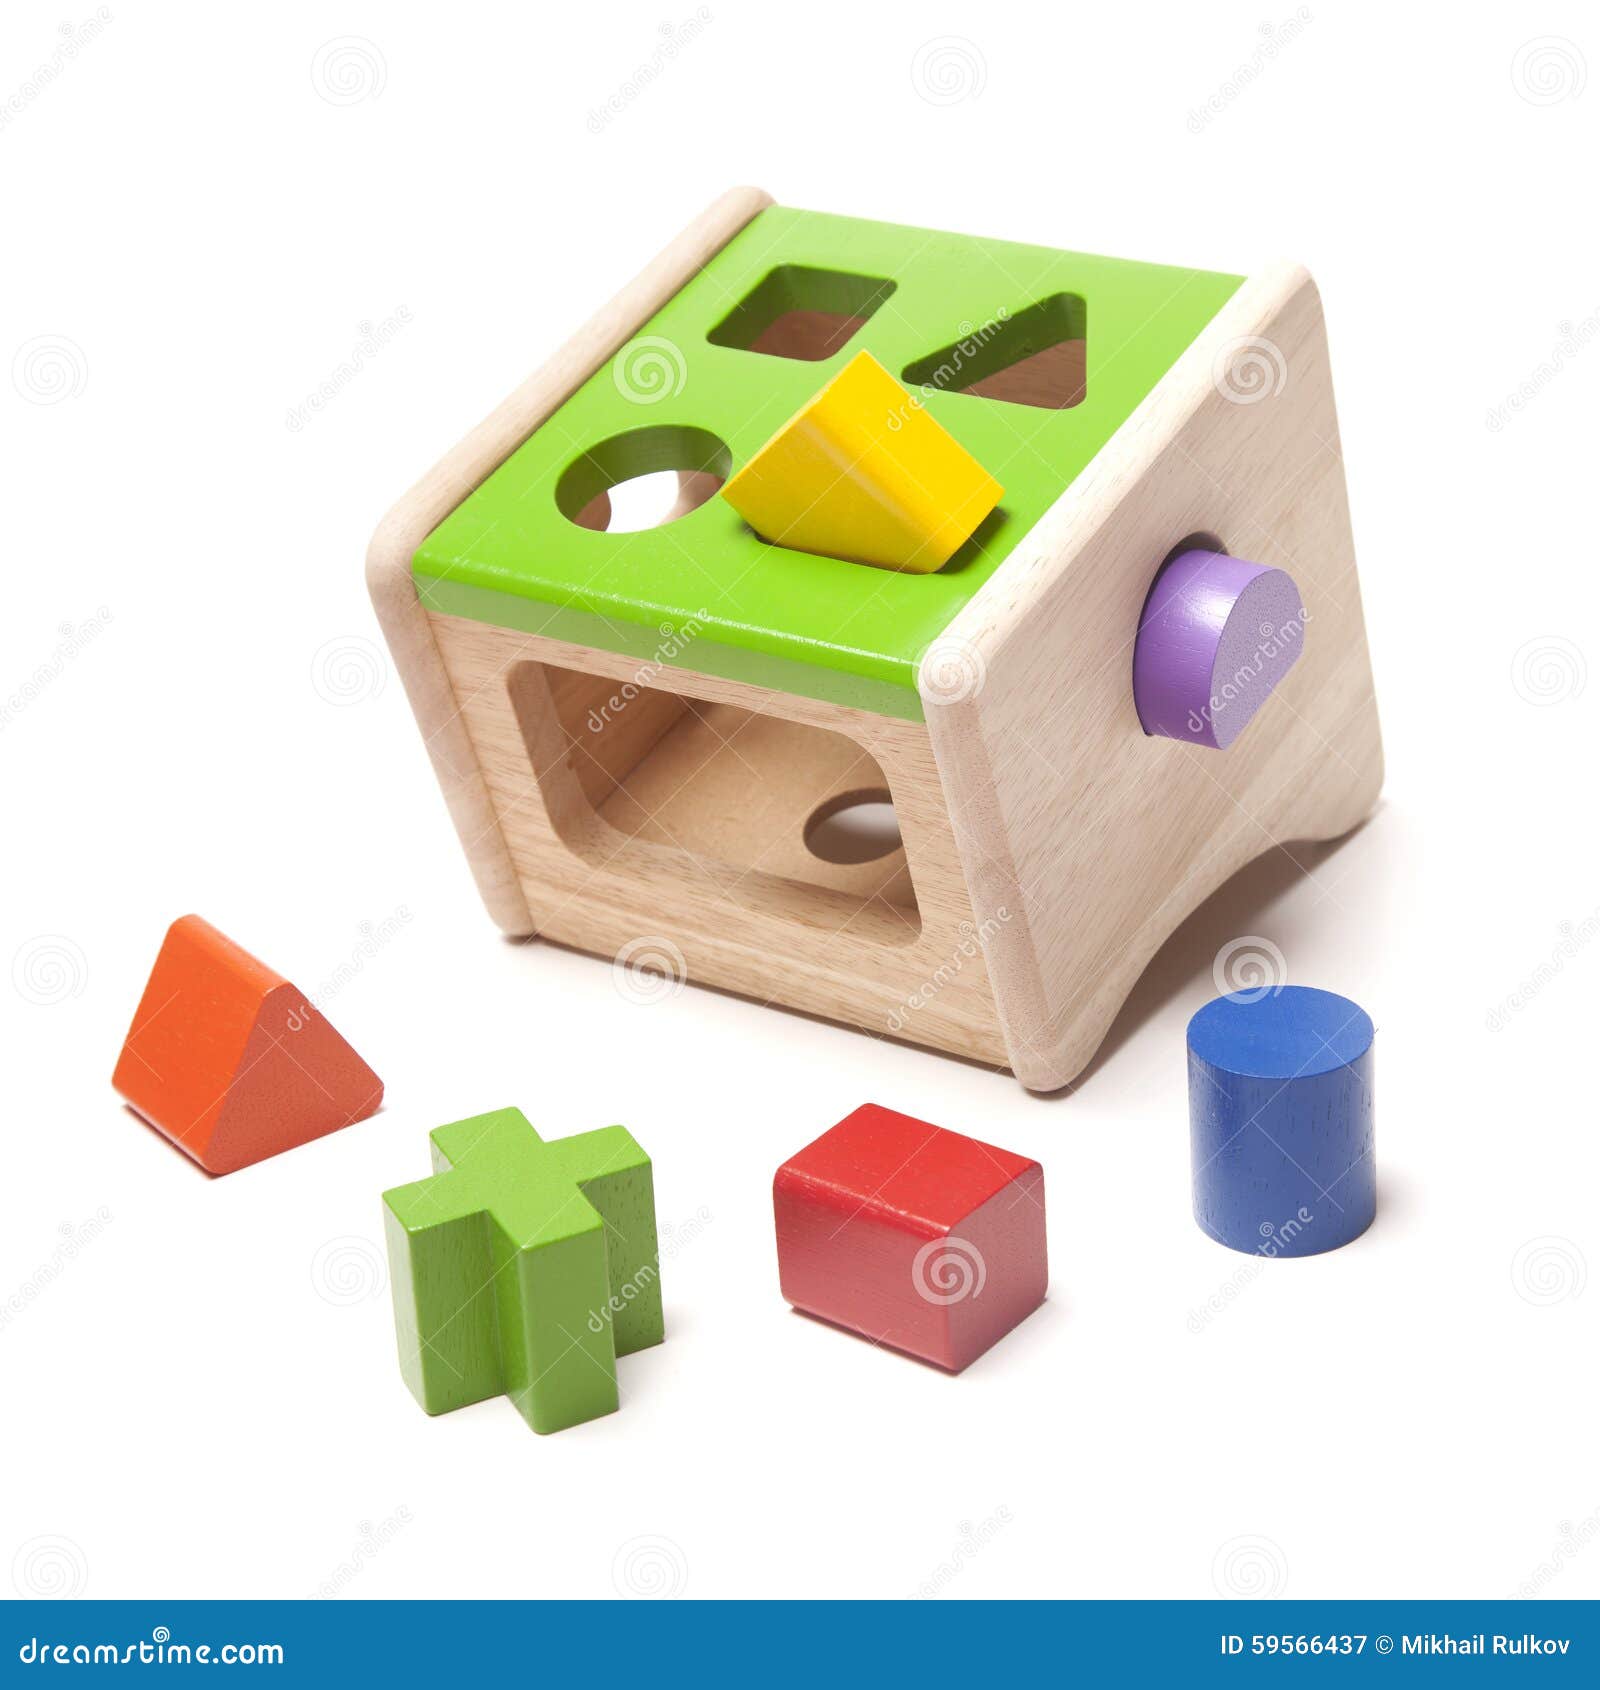 wooden sorter child toy